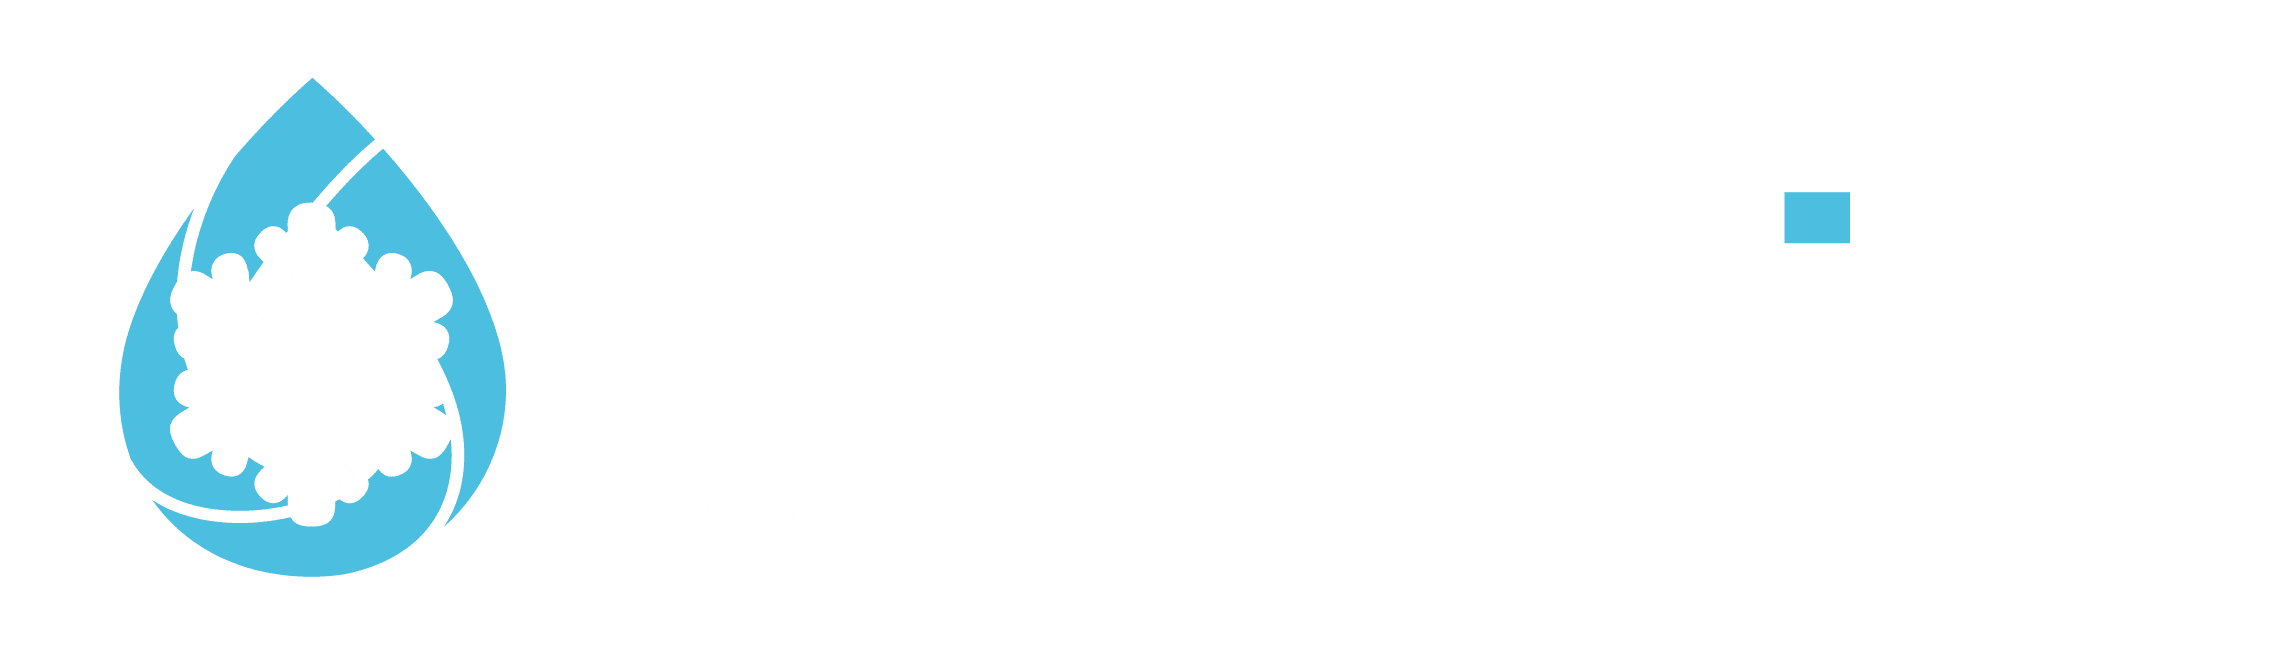 Furnace Repair |  Elite Heating and Air